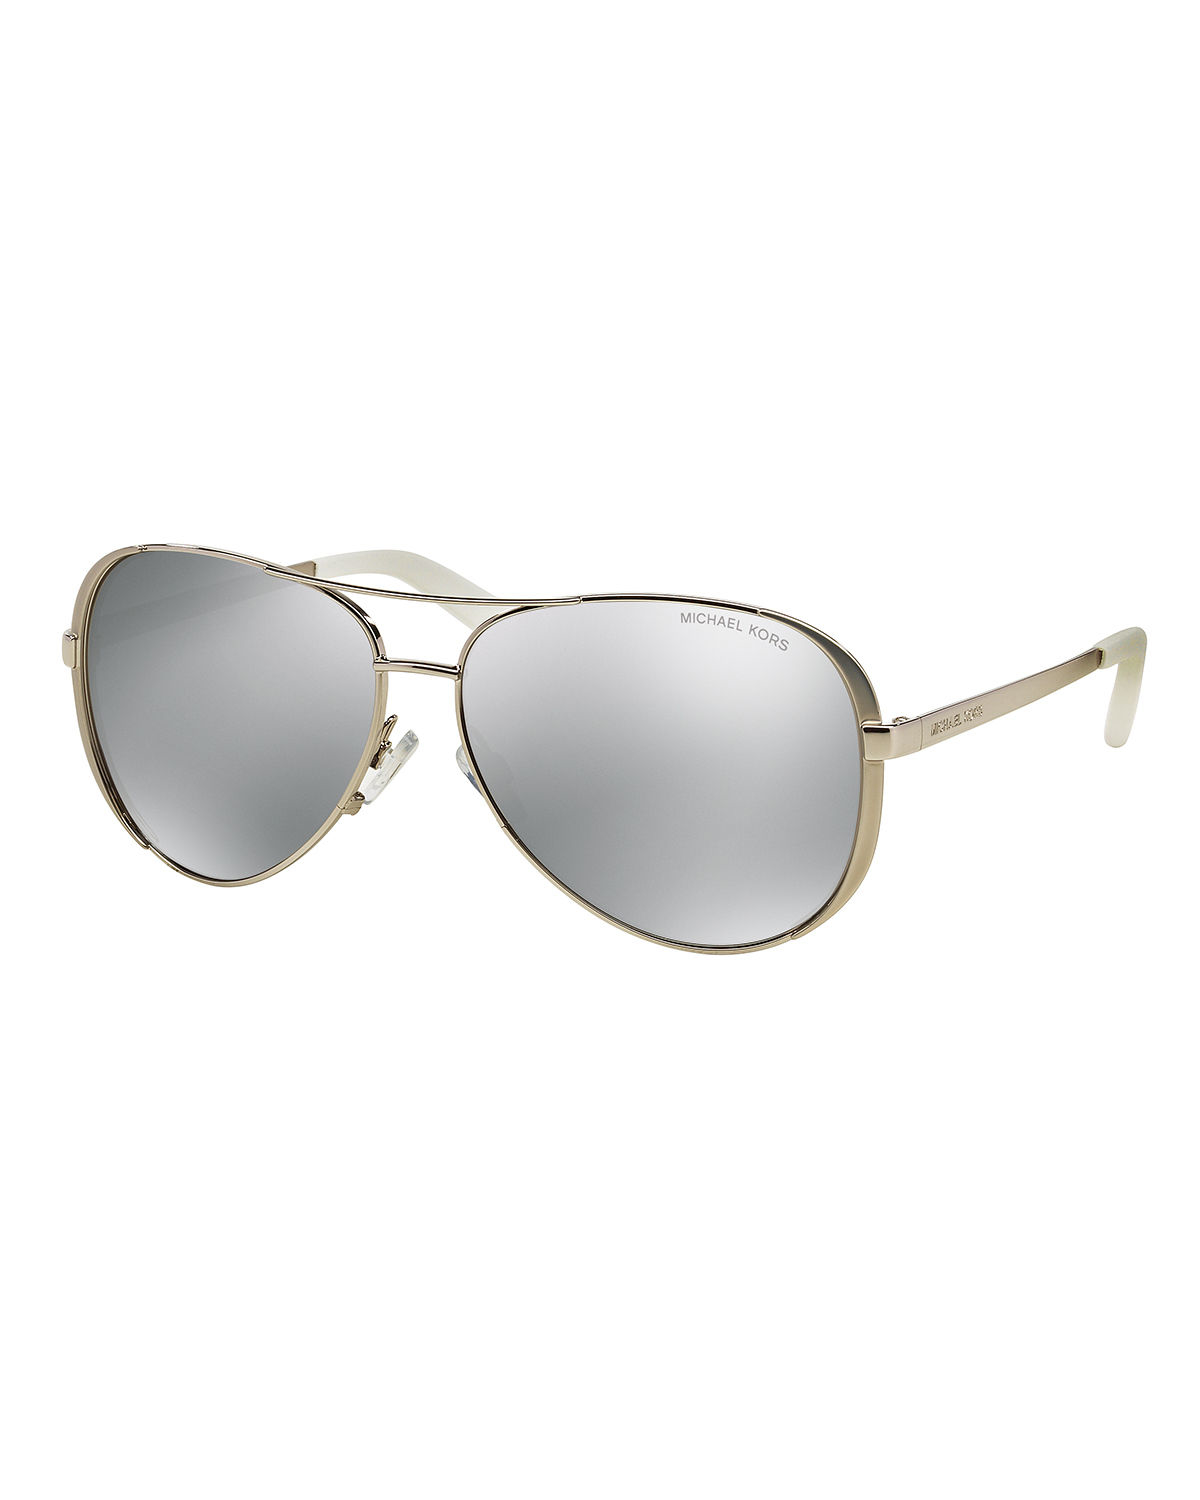 Michael Kors Polarized Aviator Sunglasses In Metallic For Men Lyst